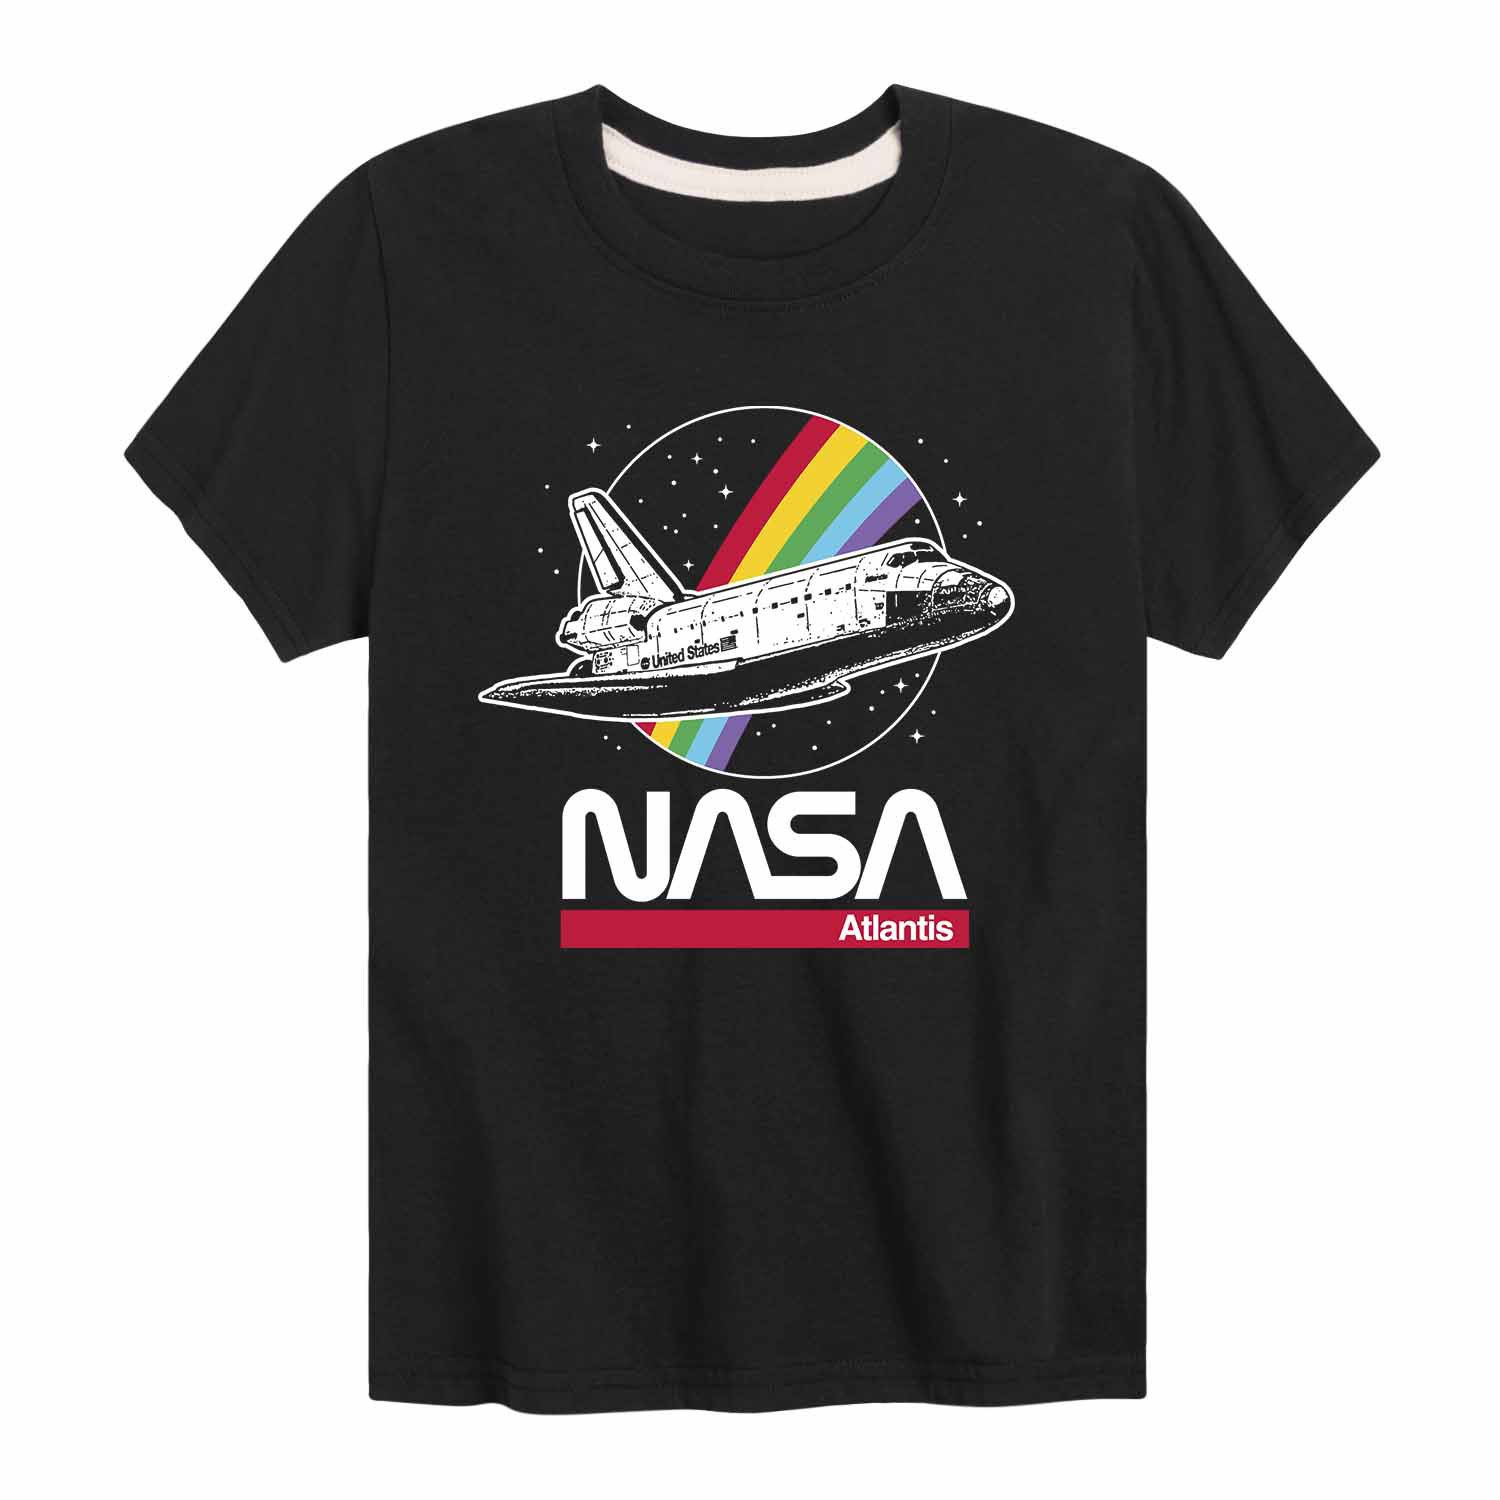 Футболка NASA Atlantic Rainbow с рисунком радуги для мальчиков 8–20 лет NASA